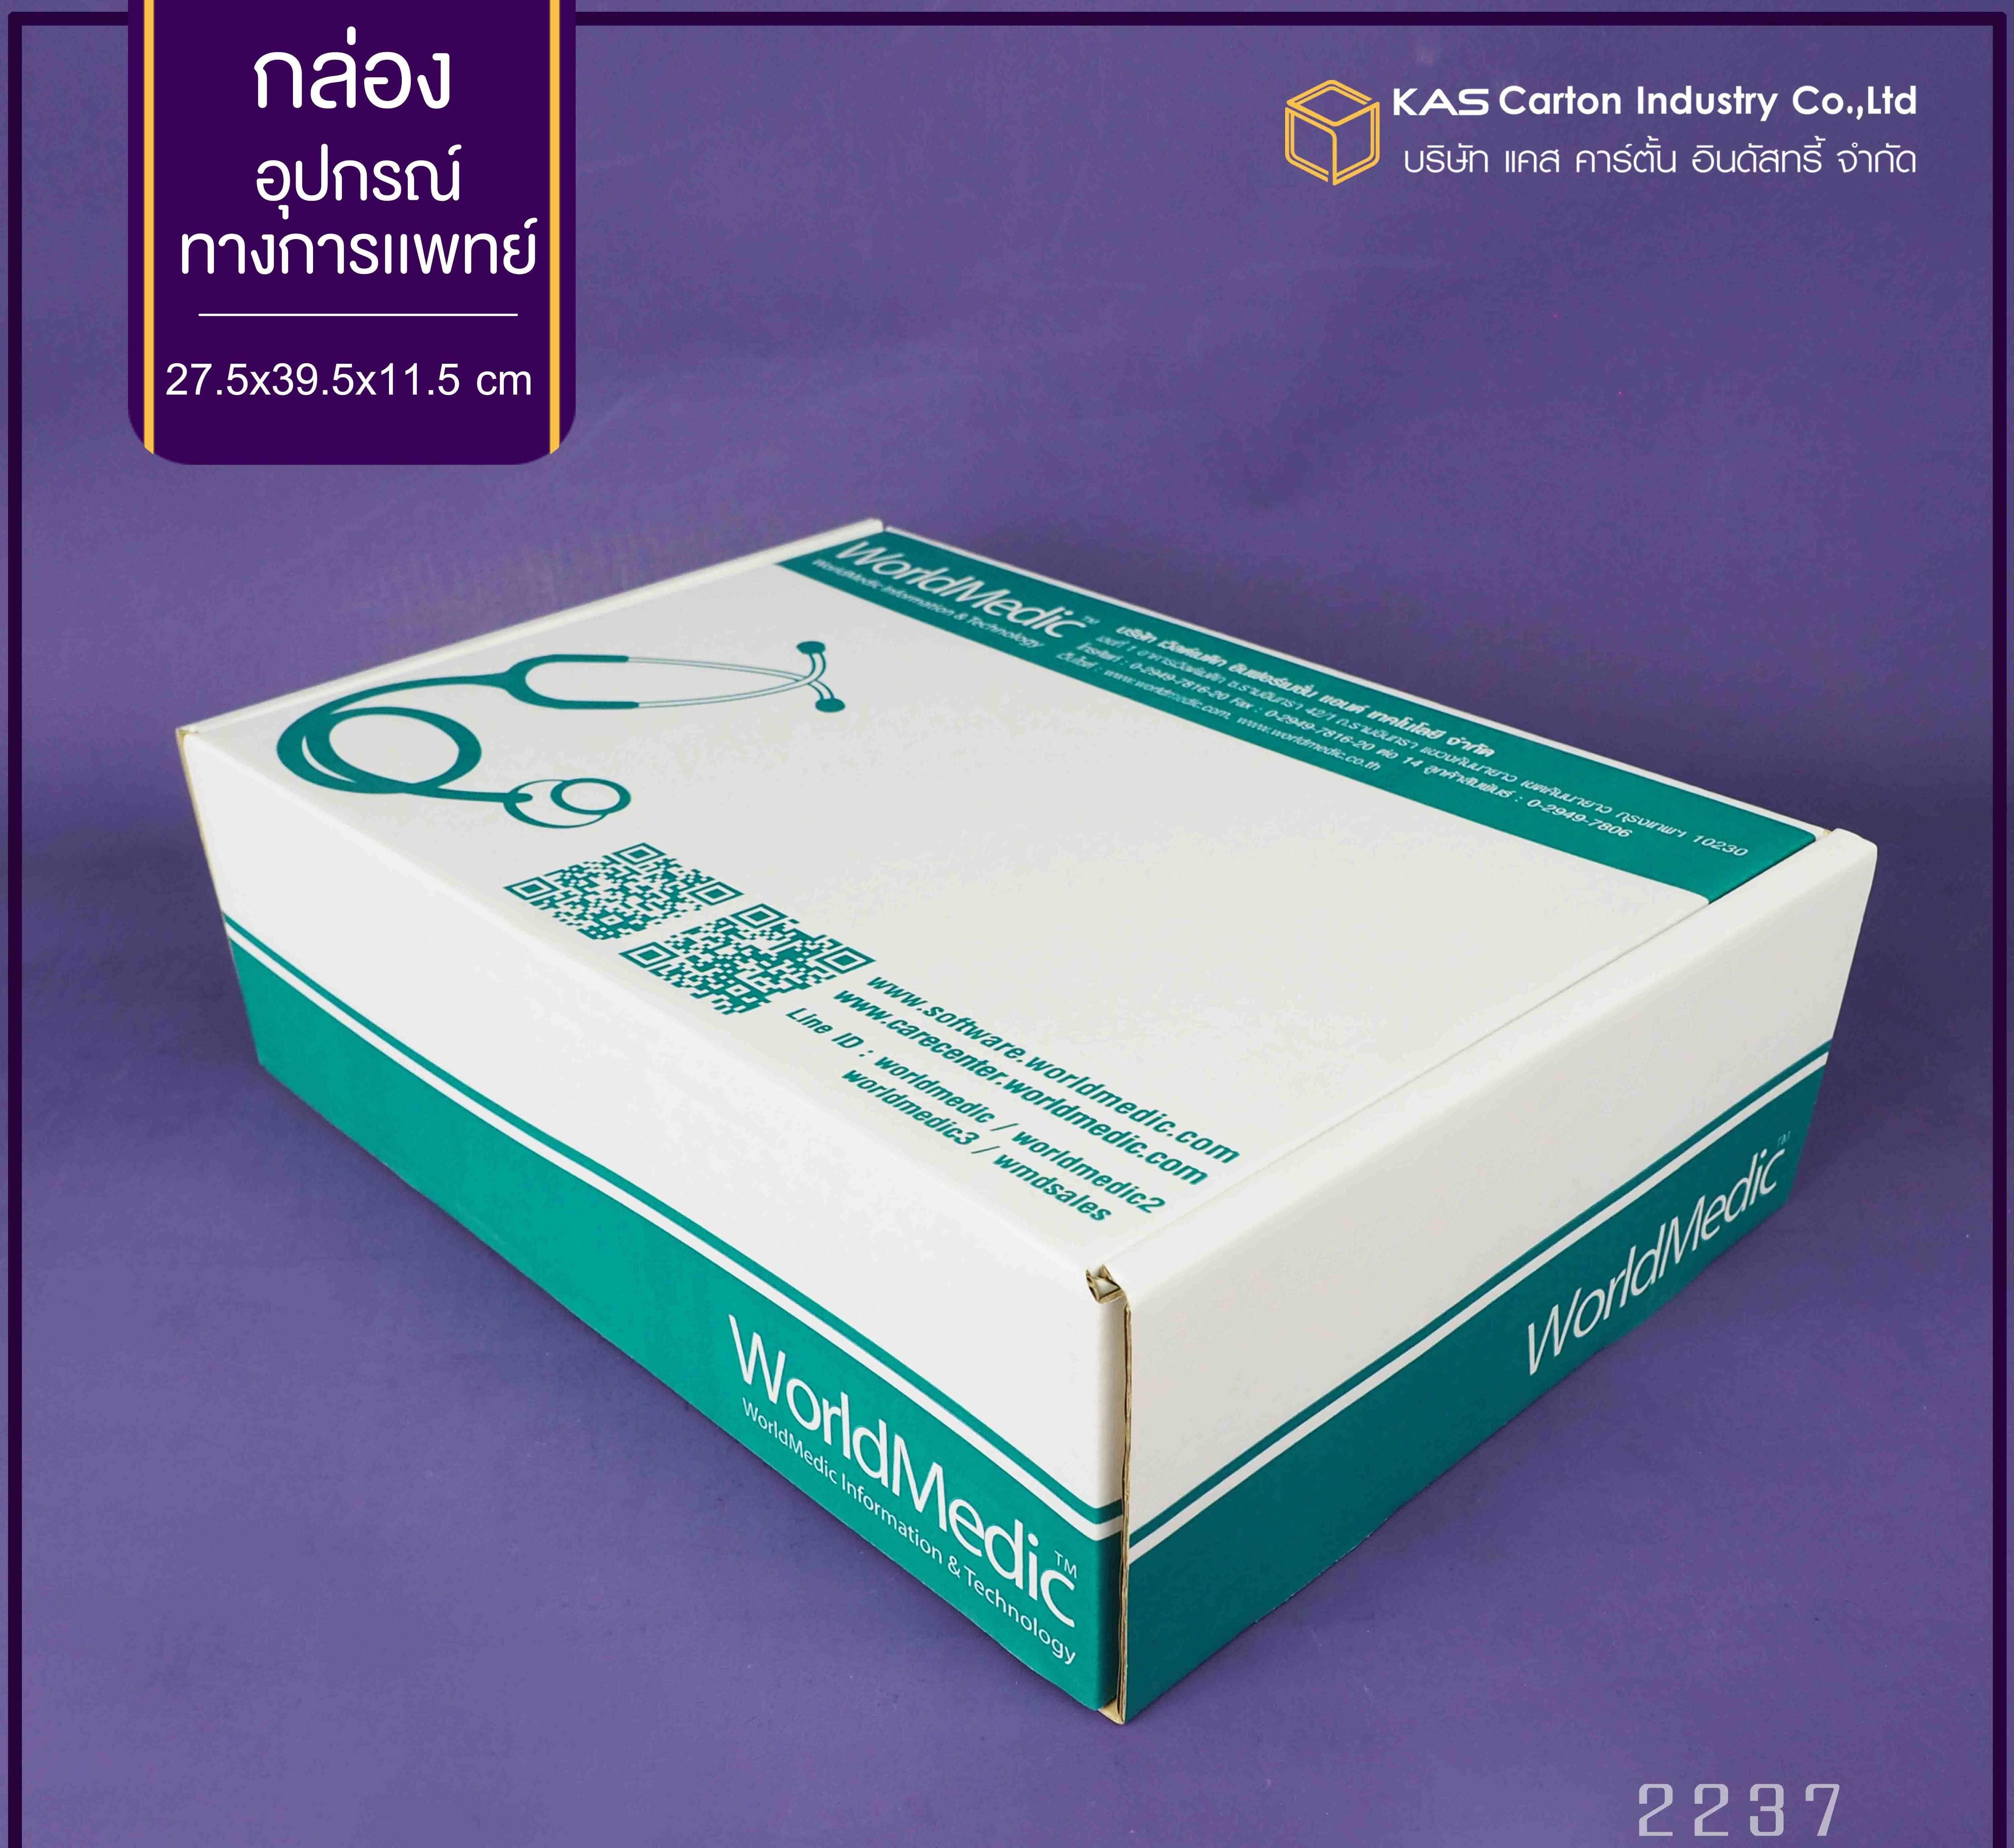 กล่องลูกฟูก สำเร็จรูป และ สั่งผลิต ตามความต้องการลูกค้า กล่องลูกฟูก SME กล่องกระดาษลูกฟูก  สำหรับ อุปกรณ์ทางการแพทย์ Brand World Medic